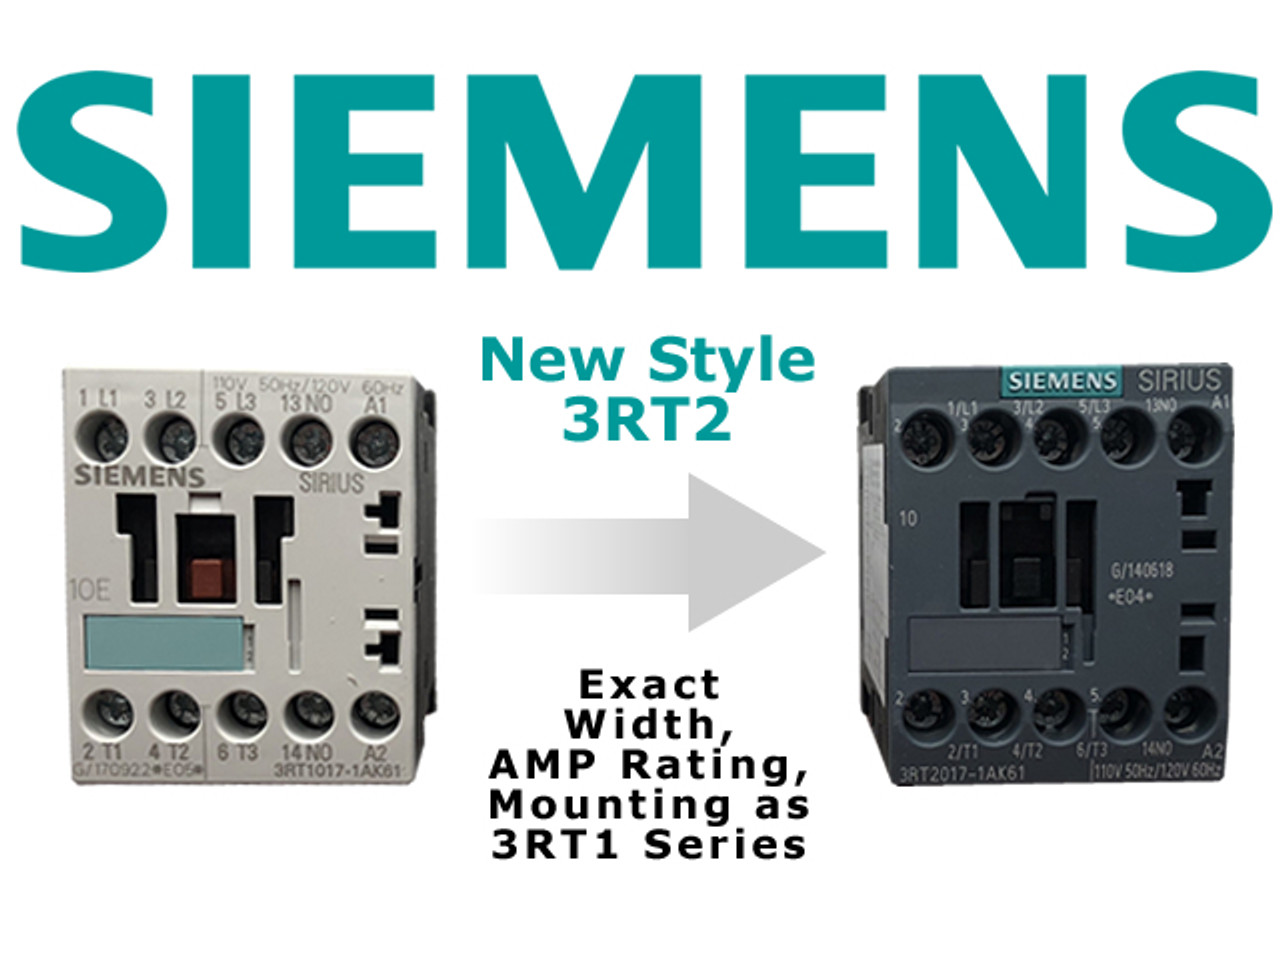 Siemens 3RT2016-1AV62 comparison